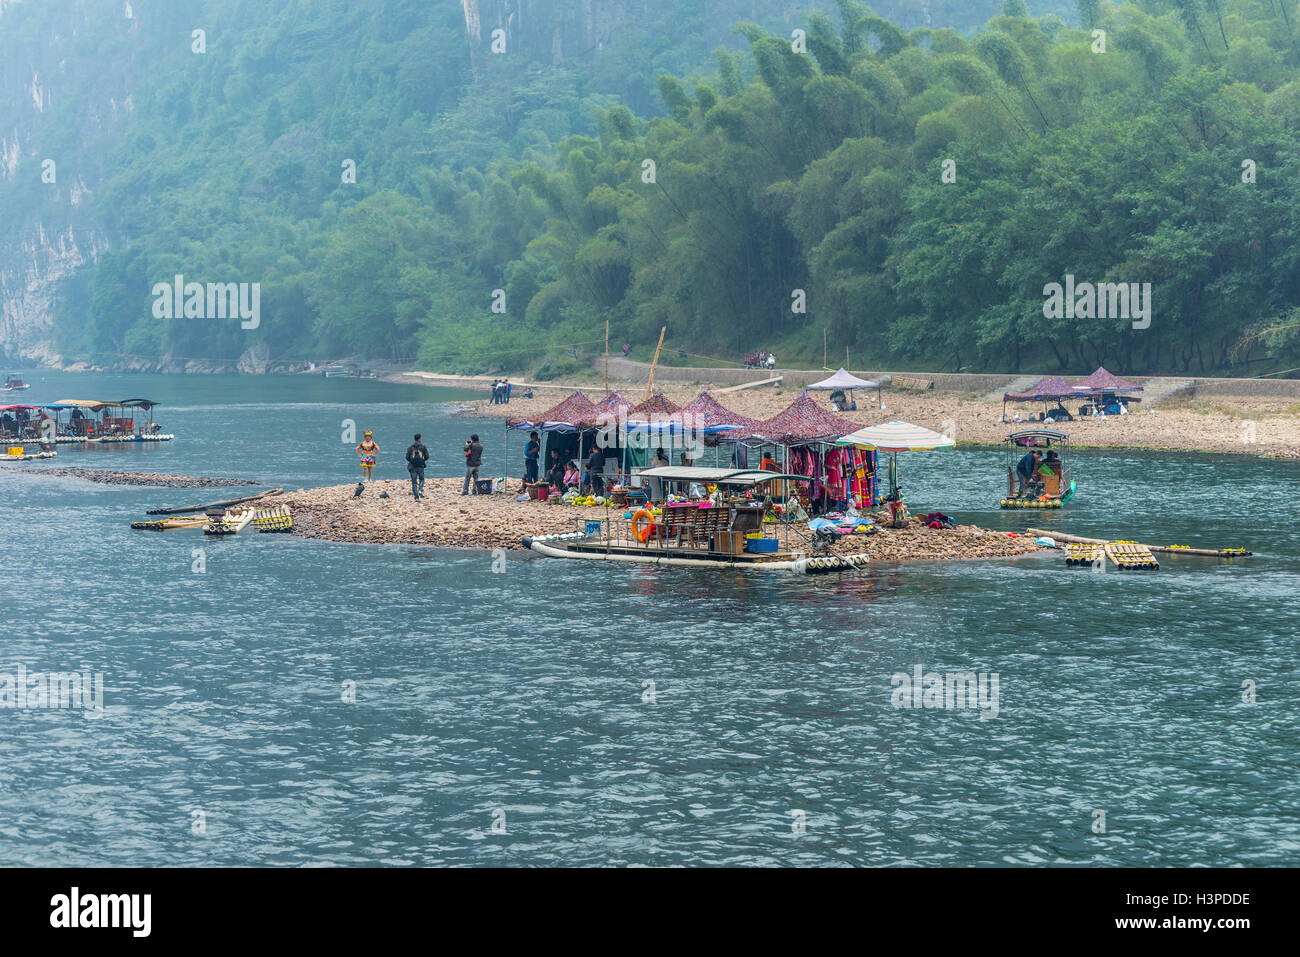 Persone, luoghi di mercato e zattere di bambù su una piccola isola sul fiume Li in Yangshuo, Guangxi, Cina Foto Stock